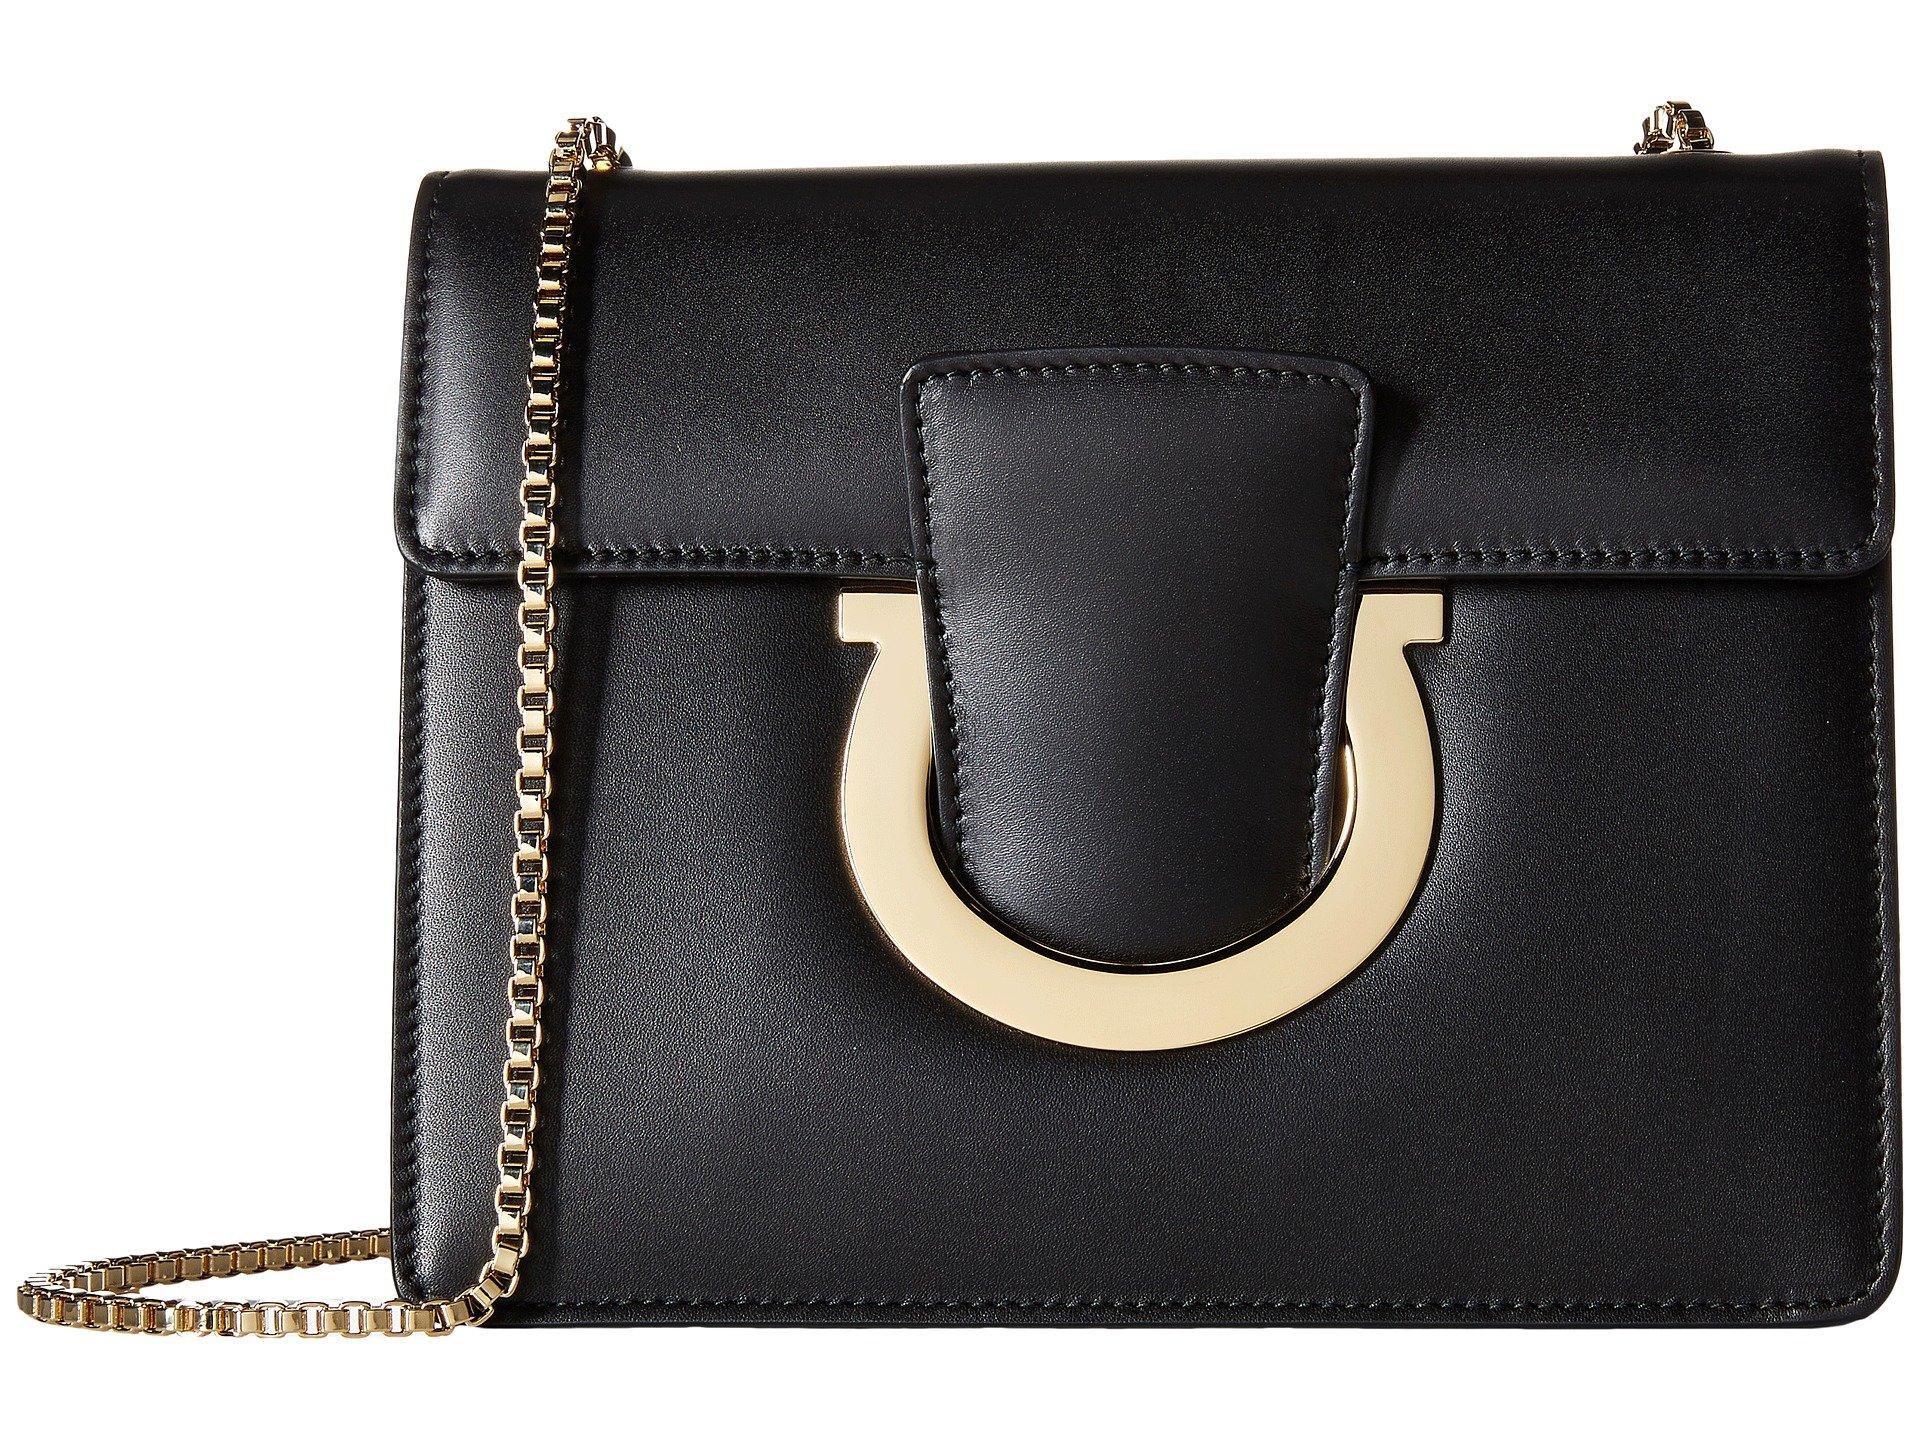 Ferragamo Leather Thalia Large Shoulder Bag in Nero Black/Gold (Natural ...